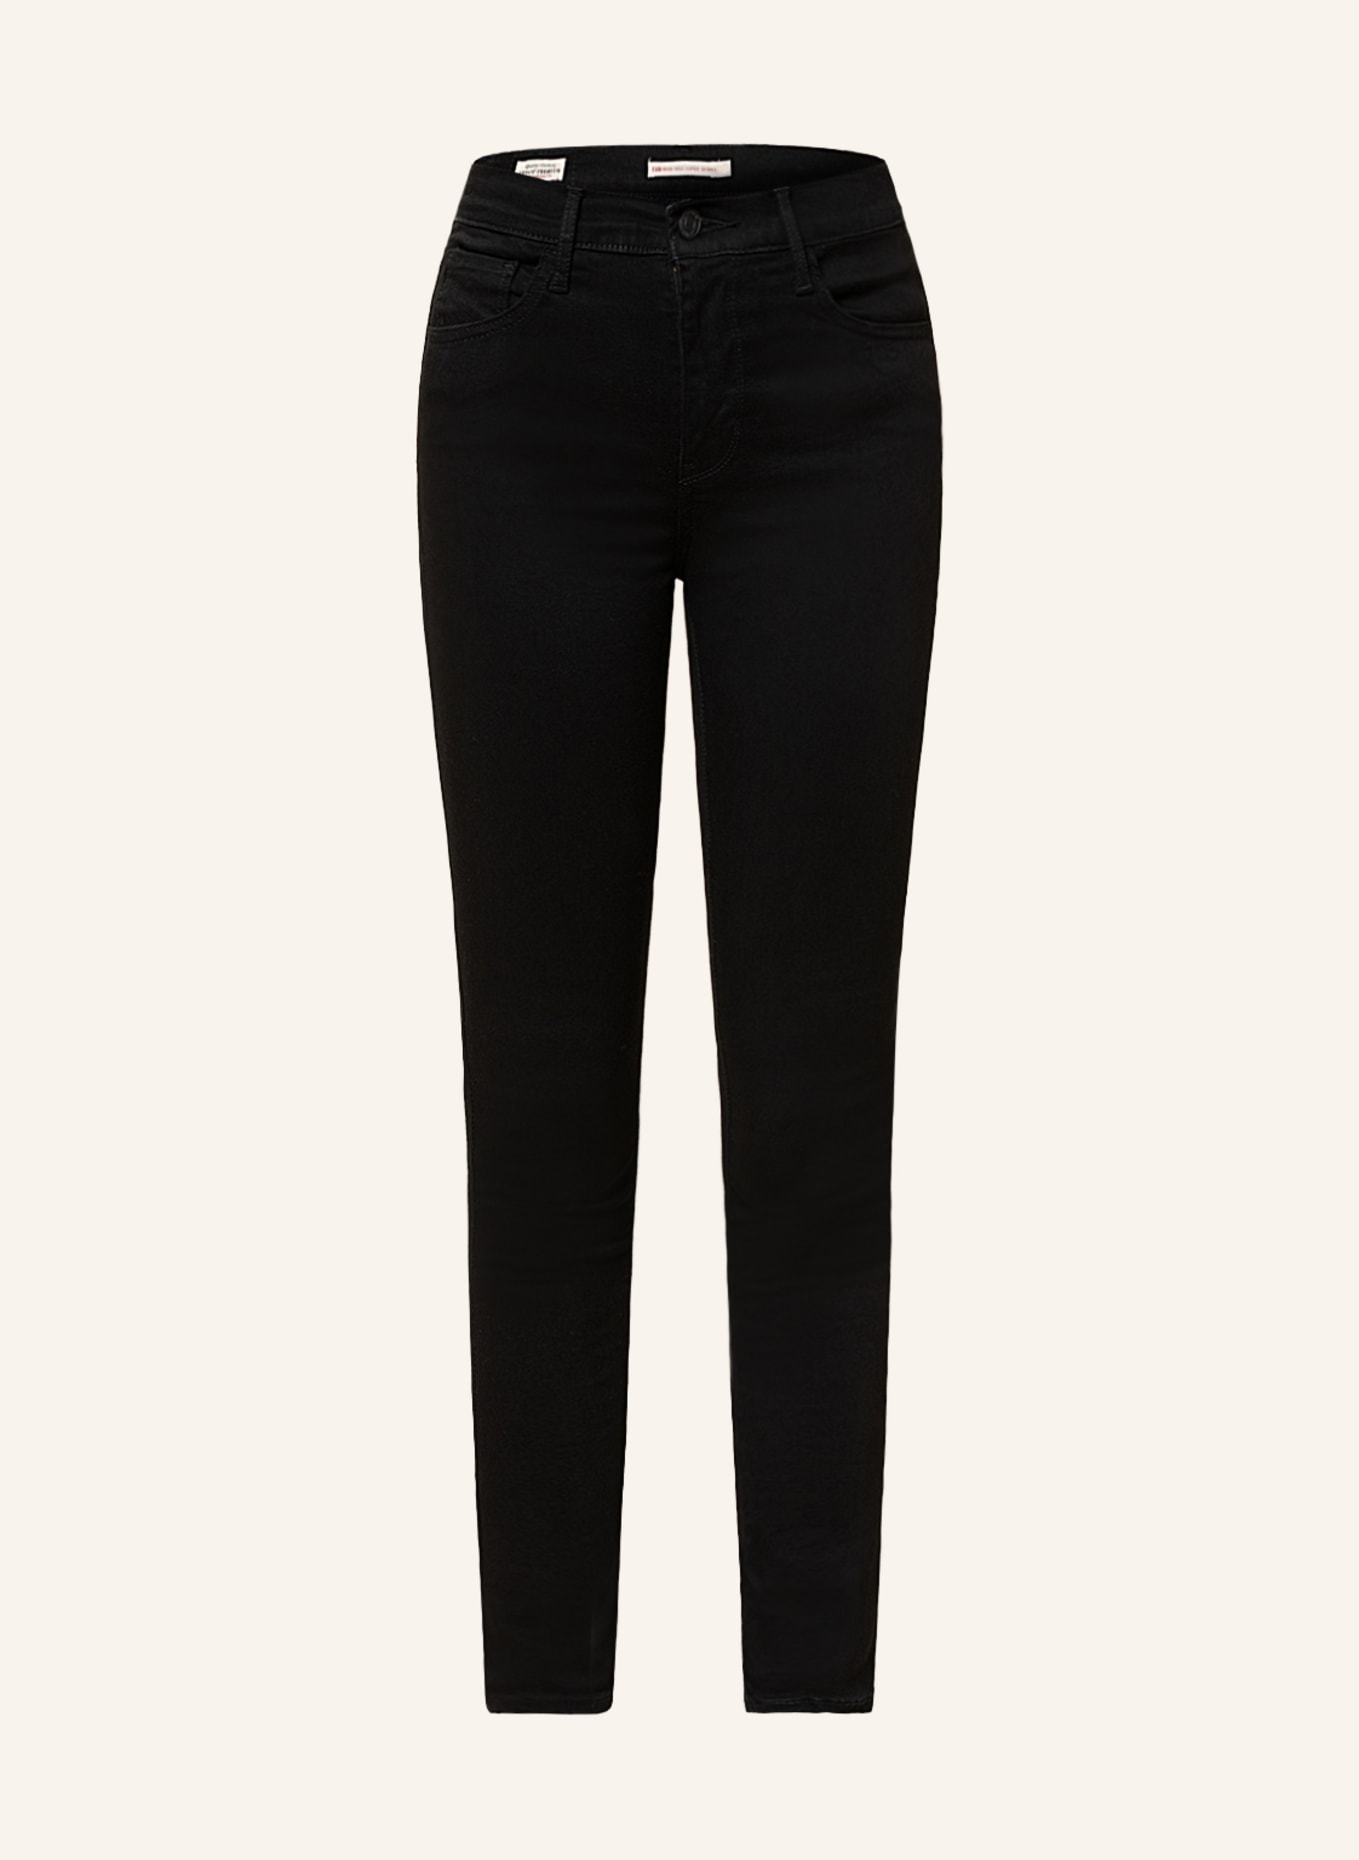 Levi's® Skinny Jeans 720, Farbe: 00 black galaxy (Bild 1)